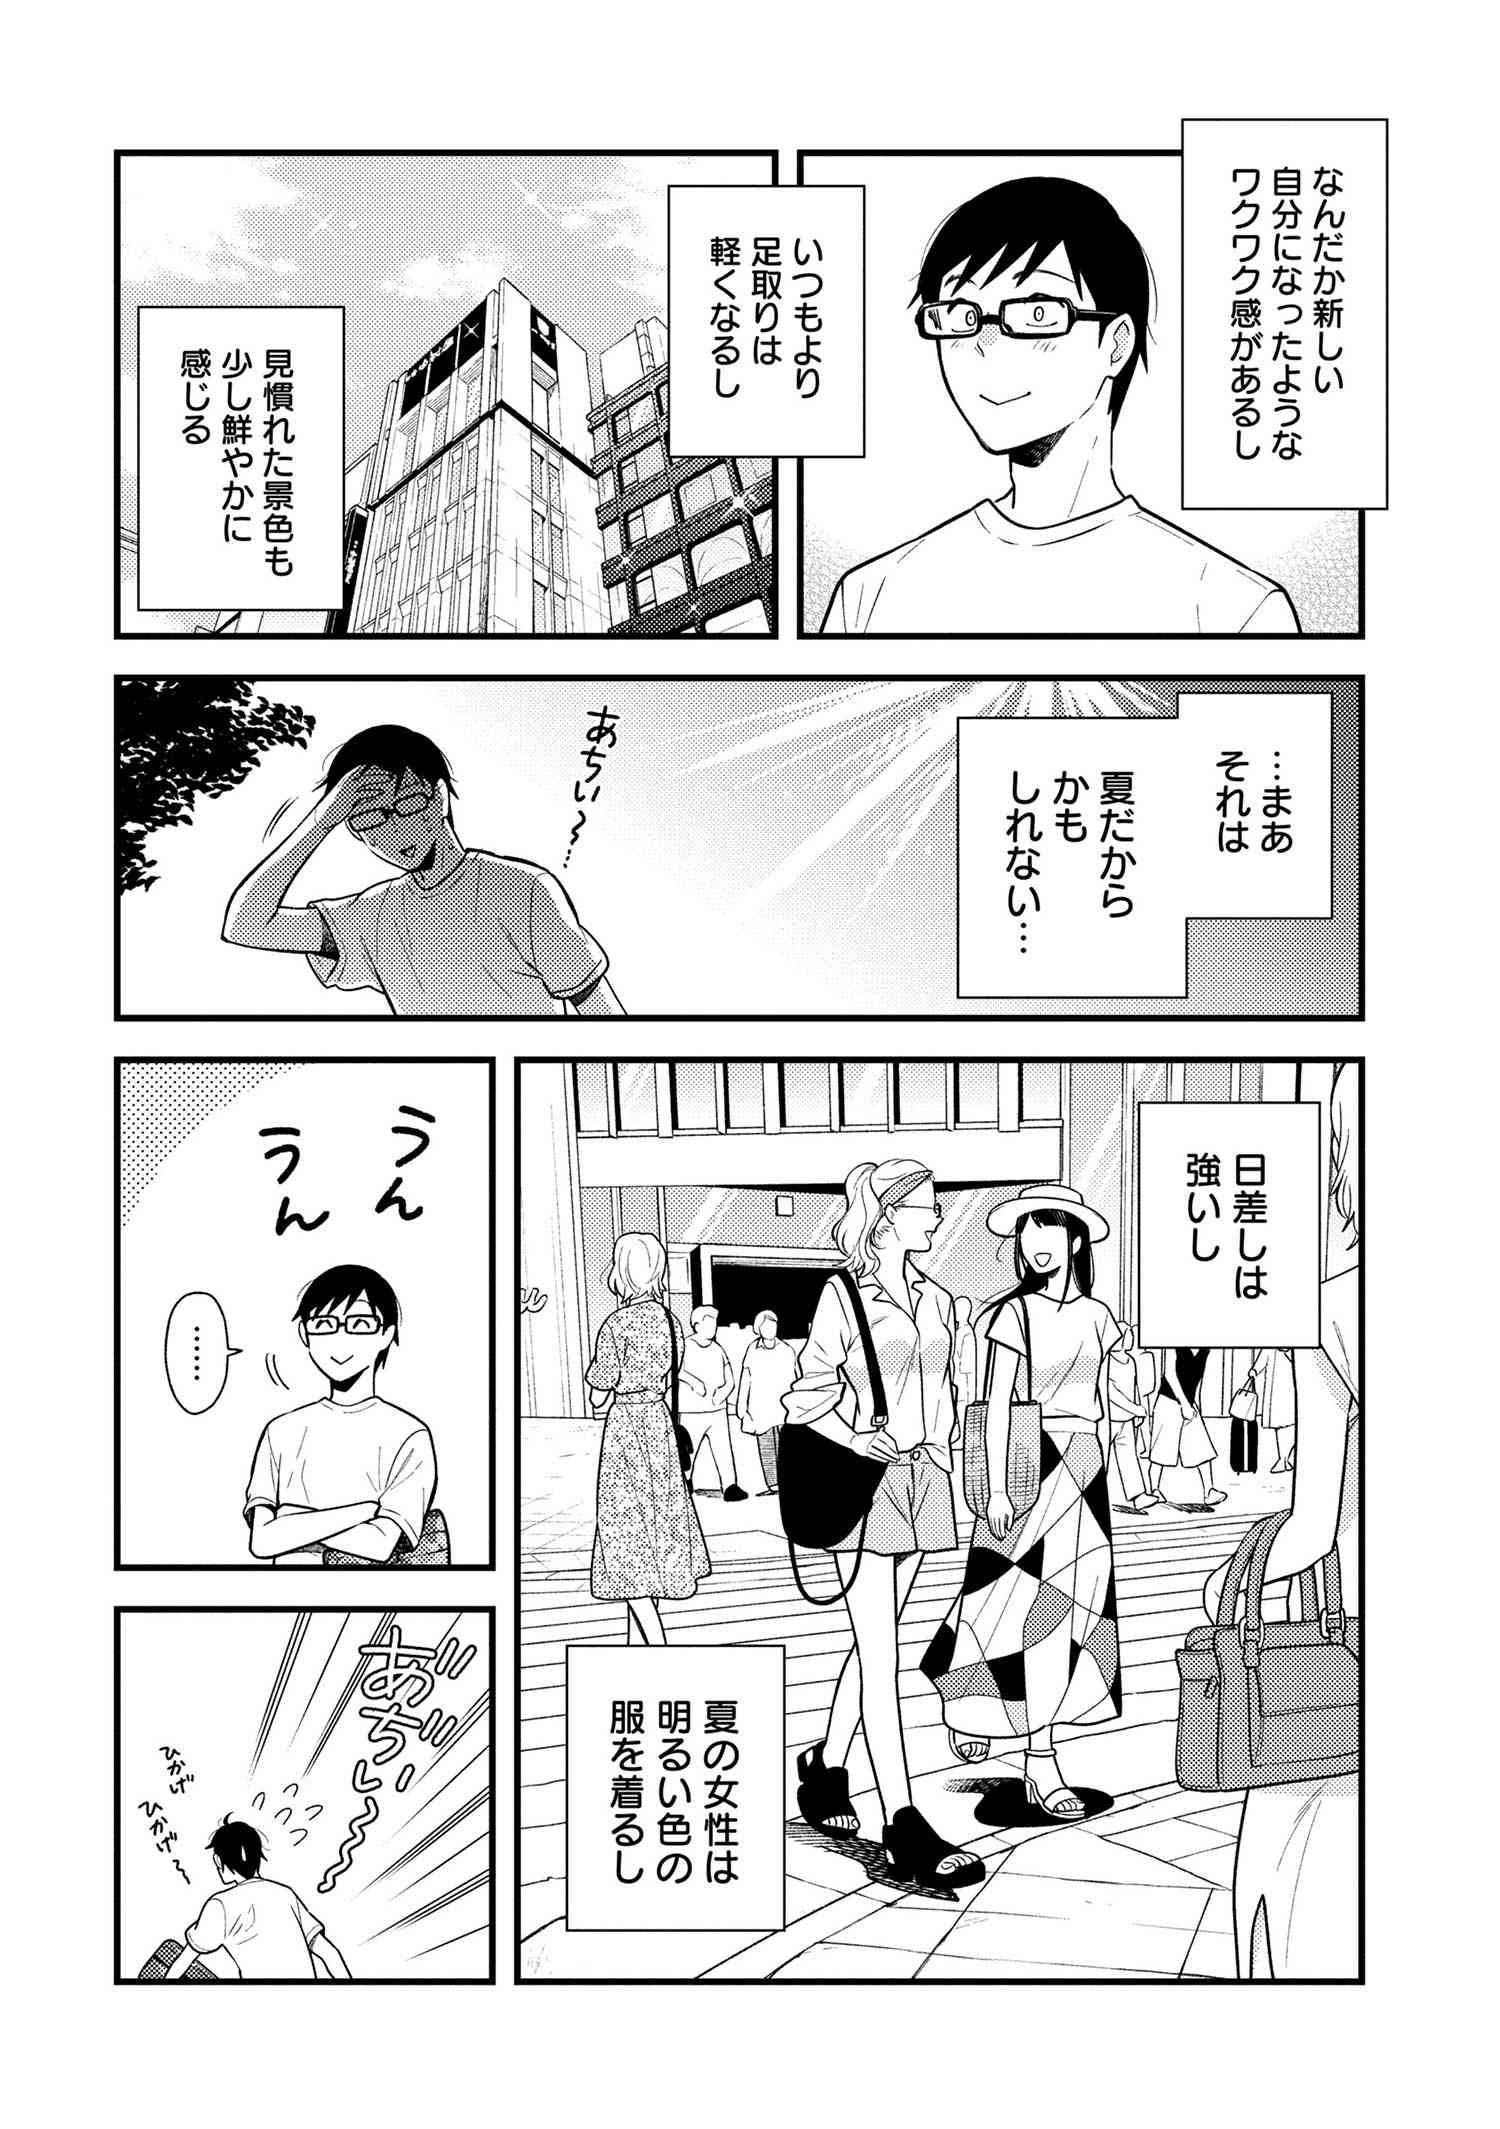 Fuku o Kiru Nara Konna Fuu ni - 服を着るならこんなふうに - Chapter 46 - Page 2